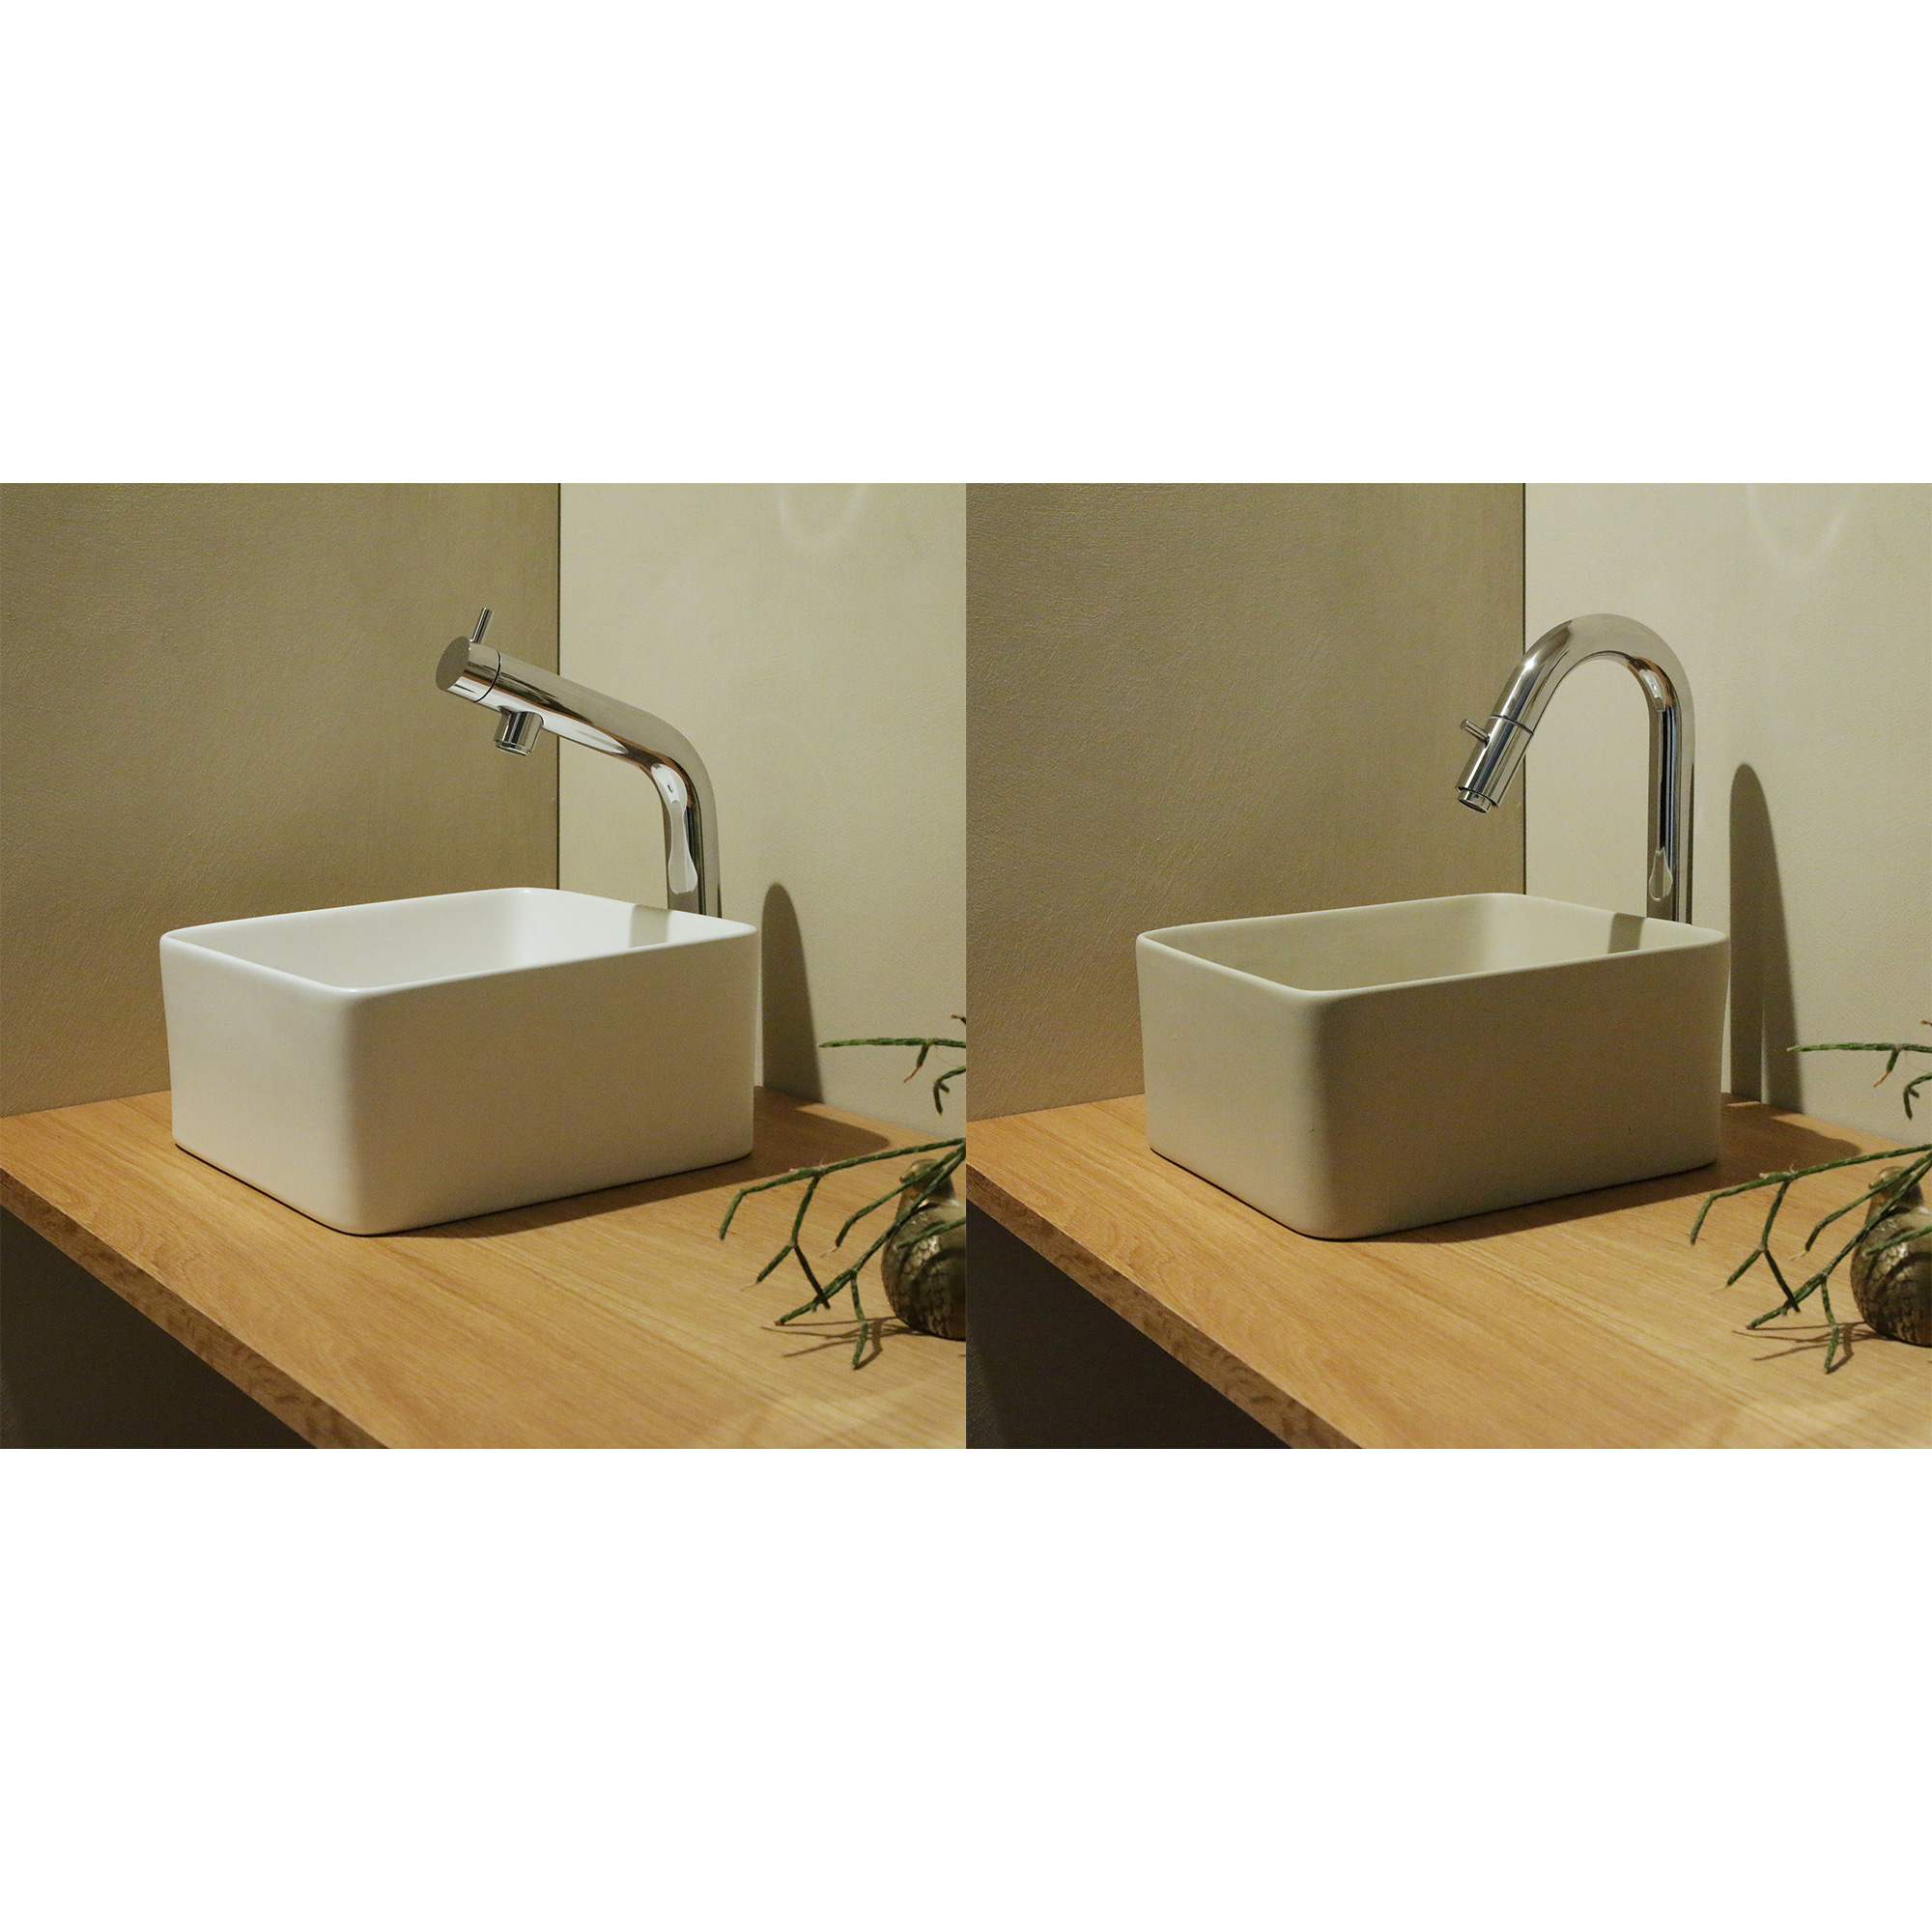 木の手洗いカウンター 陶器の手洗い器 角240 立水栓用 KB-PR013-02-G165 左がベントネック、右がグースネックのオプション単水栓との組み合わせ